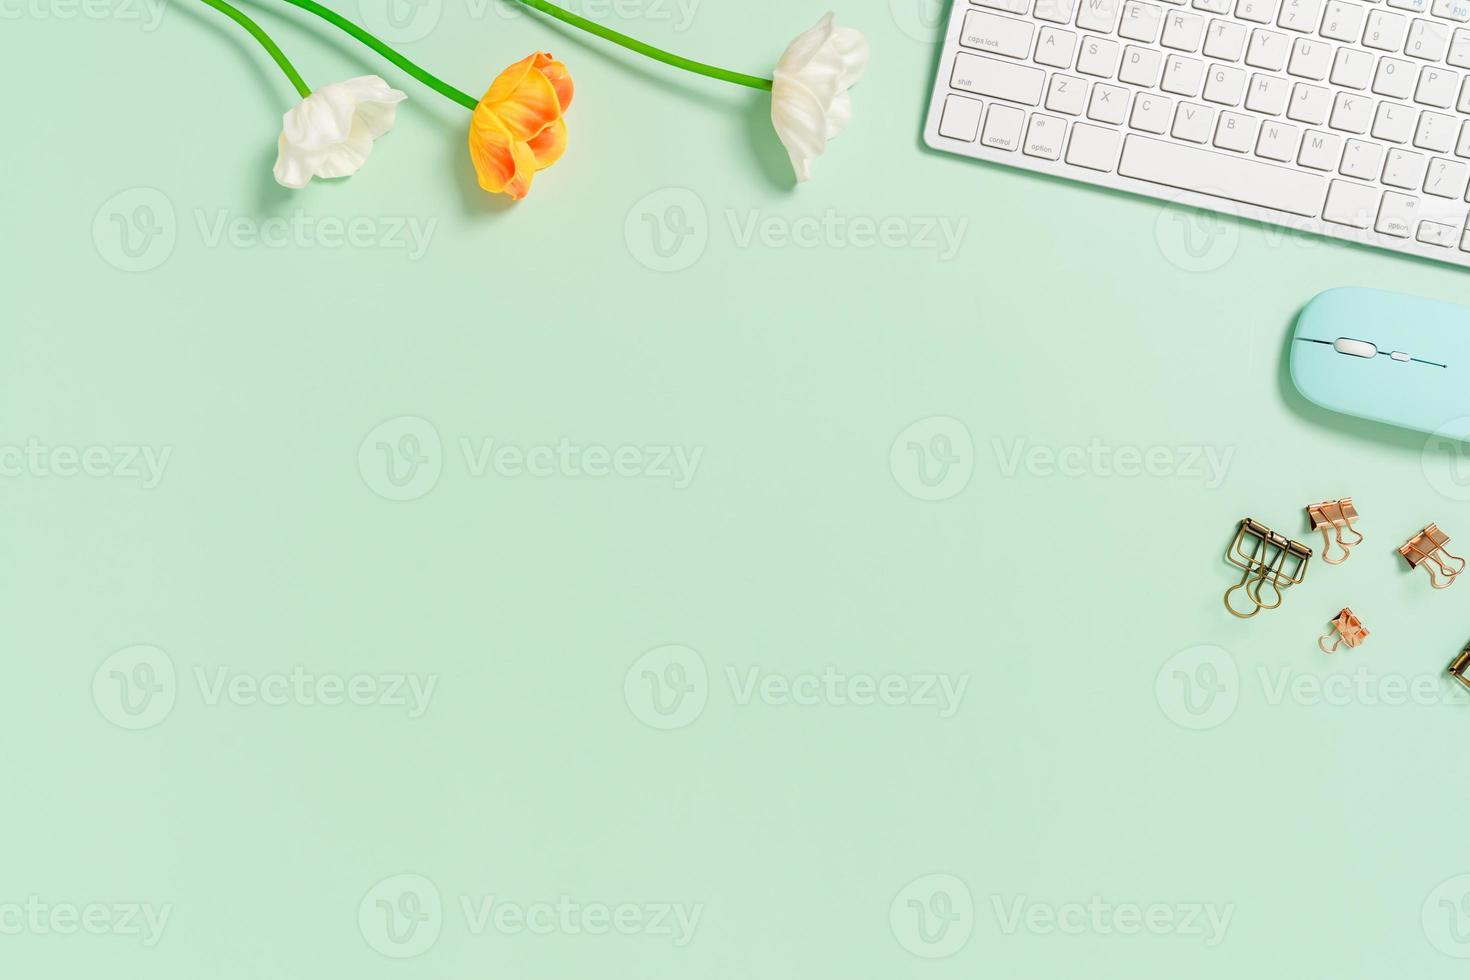 minimaler arbeitsplatz - kreatives flaches foto des arbeitsplatzes. Schreibtisch von oben mit Tastatur und Maus auf pastellgrünem Hintergrund. Draufsicht mit Kopienraum, Flachfotografie.